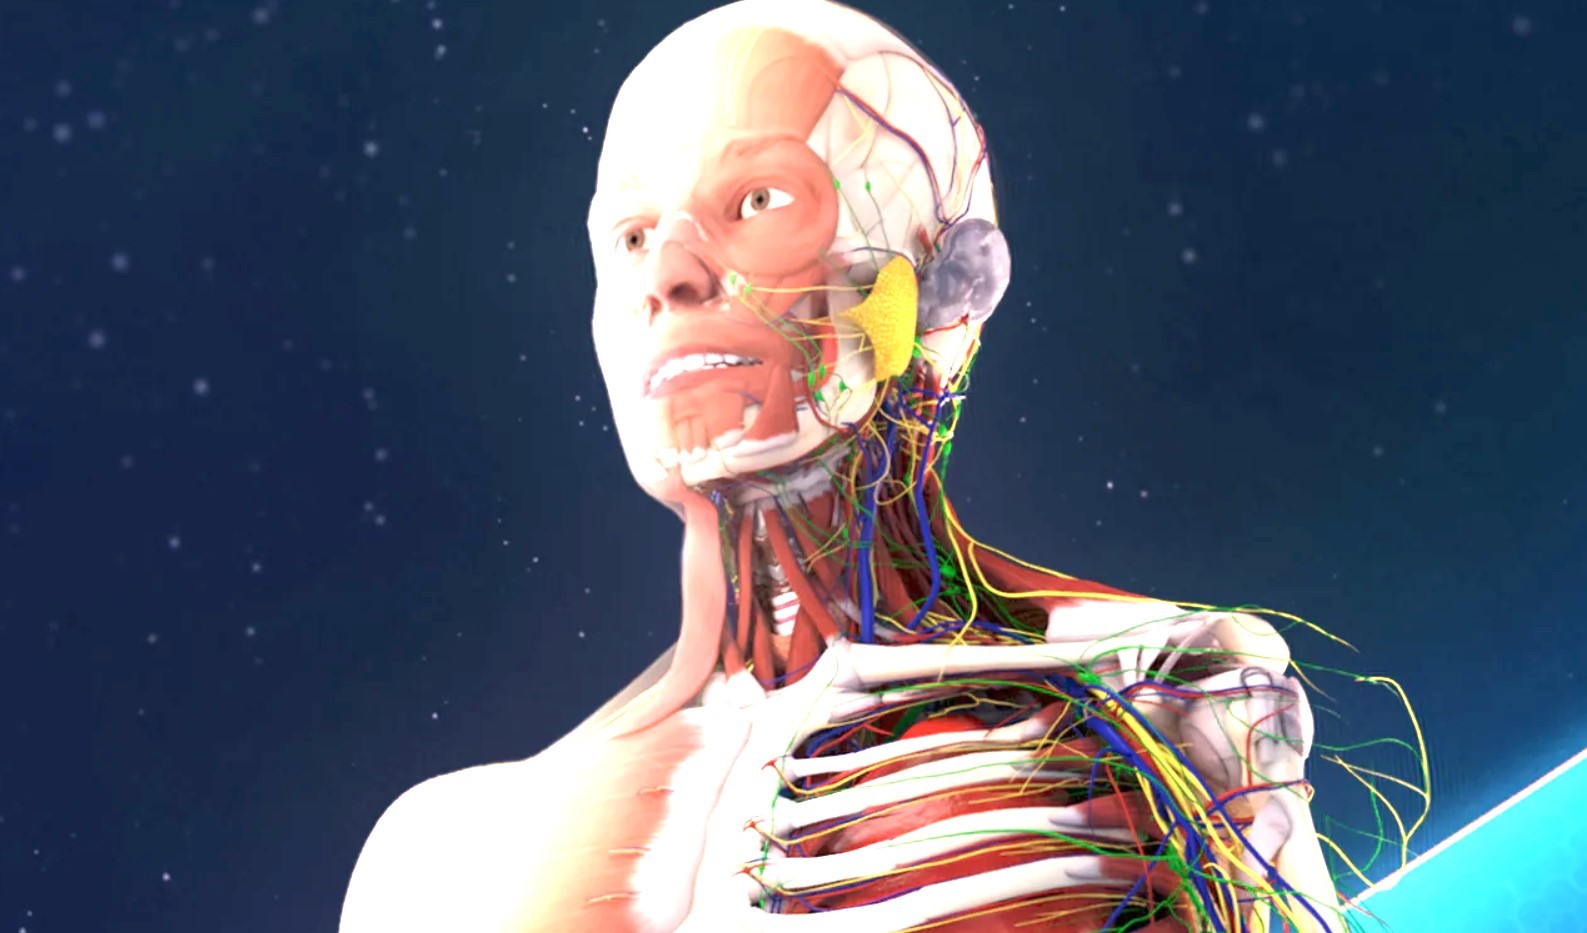 开膛破肚游戏《人体解剖VR》现已登陆PSVR